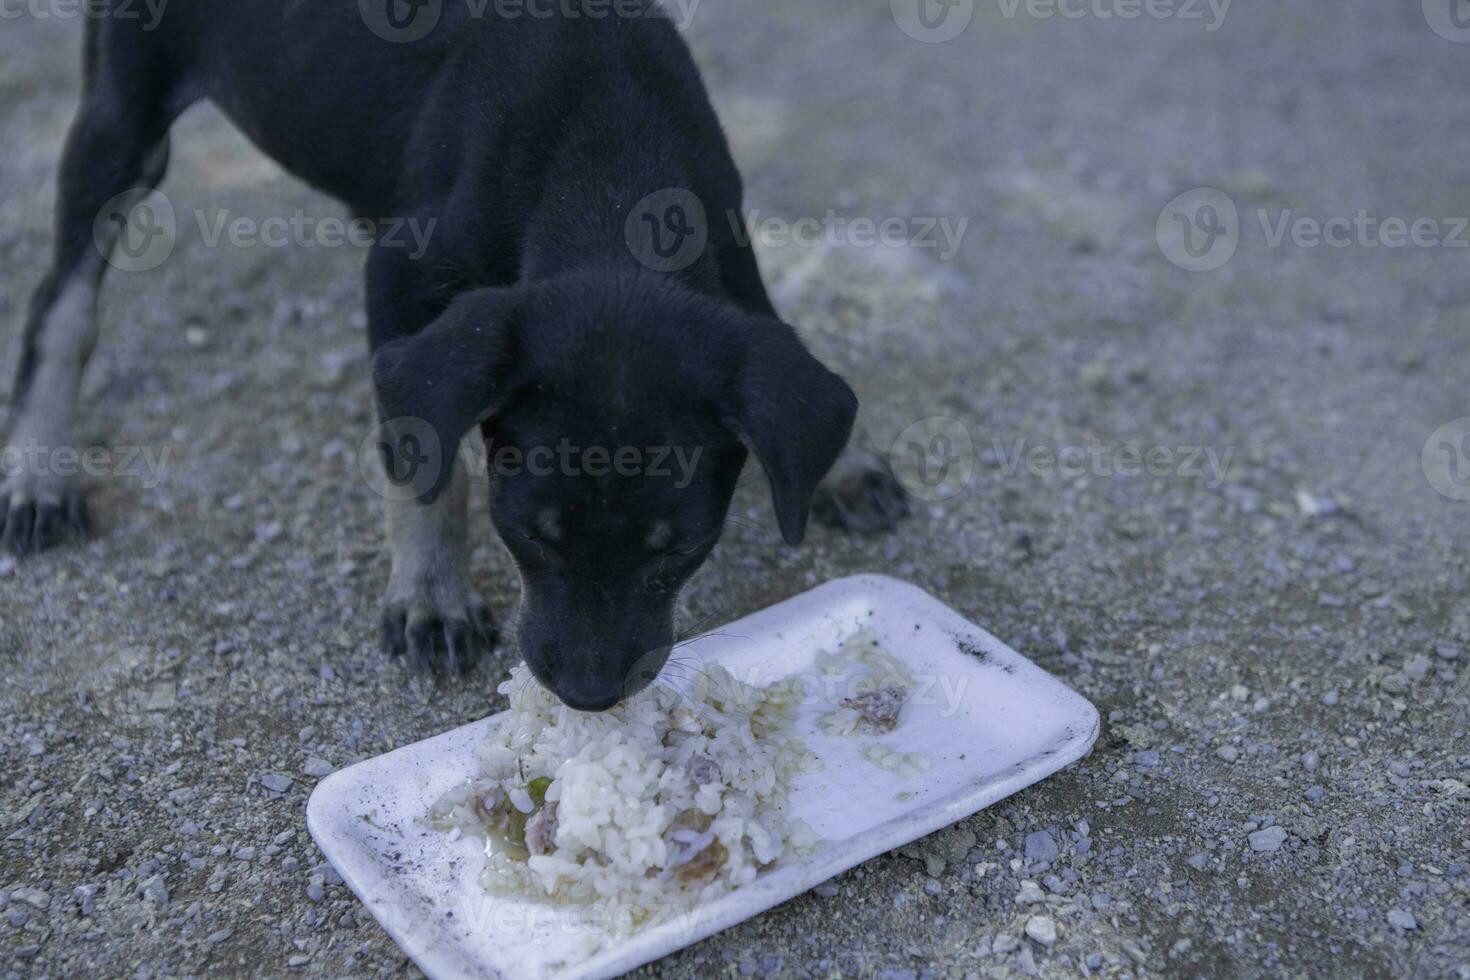 een hond aan het eten voedsel alleen van een kom in de park. selectief focus. zwart klein hond eten vuil voedsel bord Aan de grond in de park foto